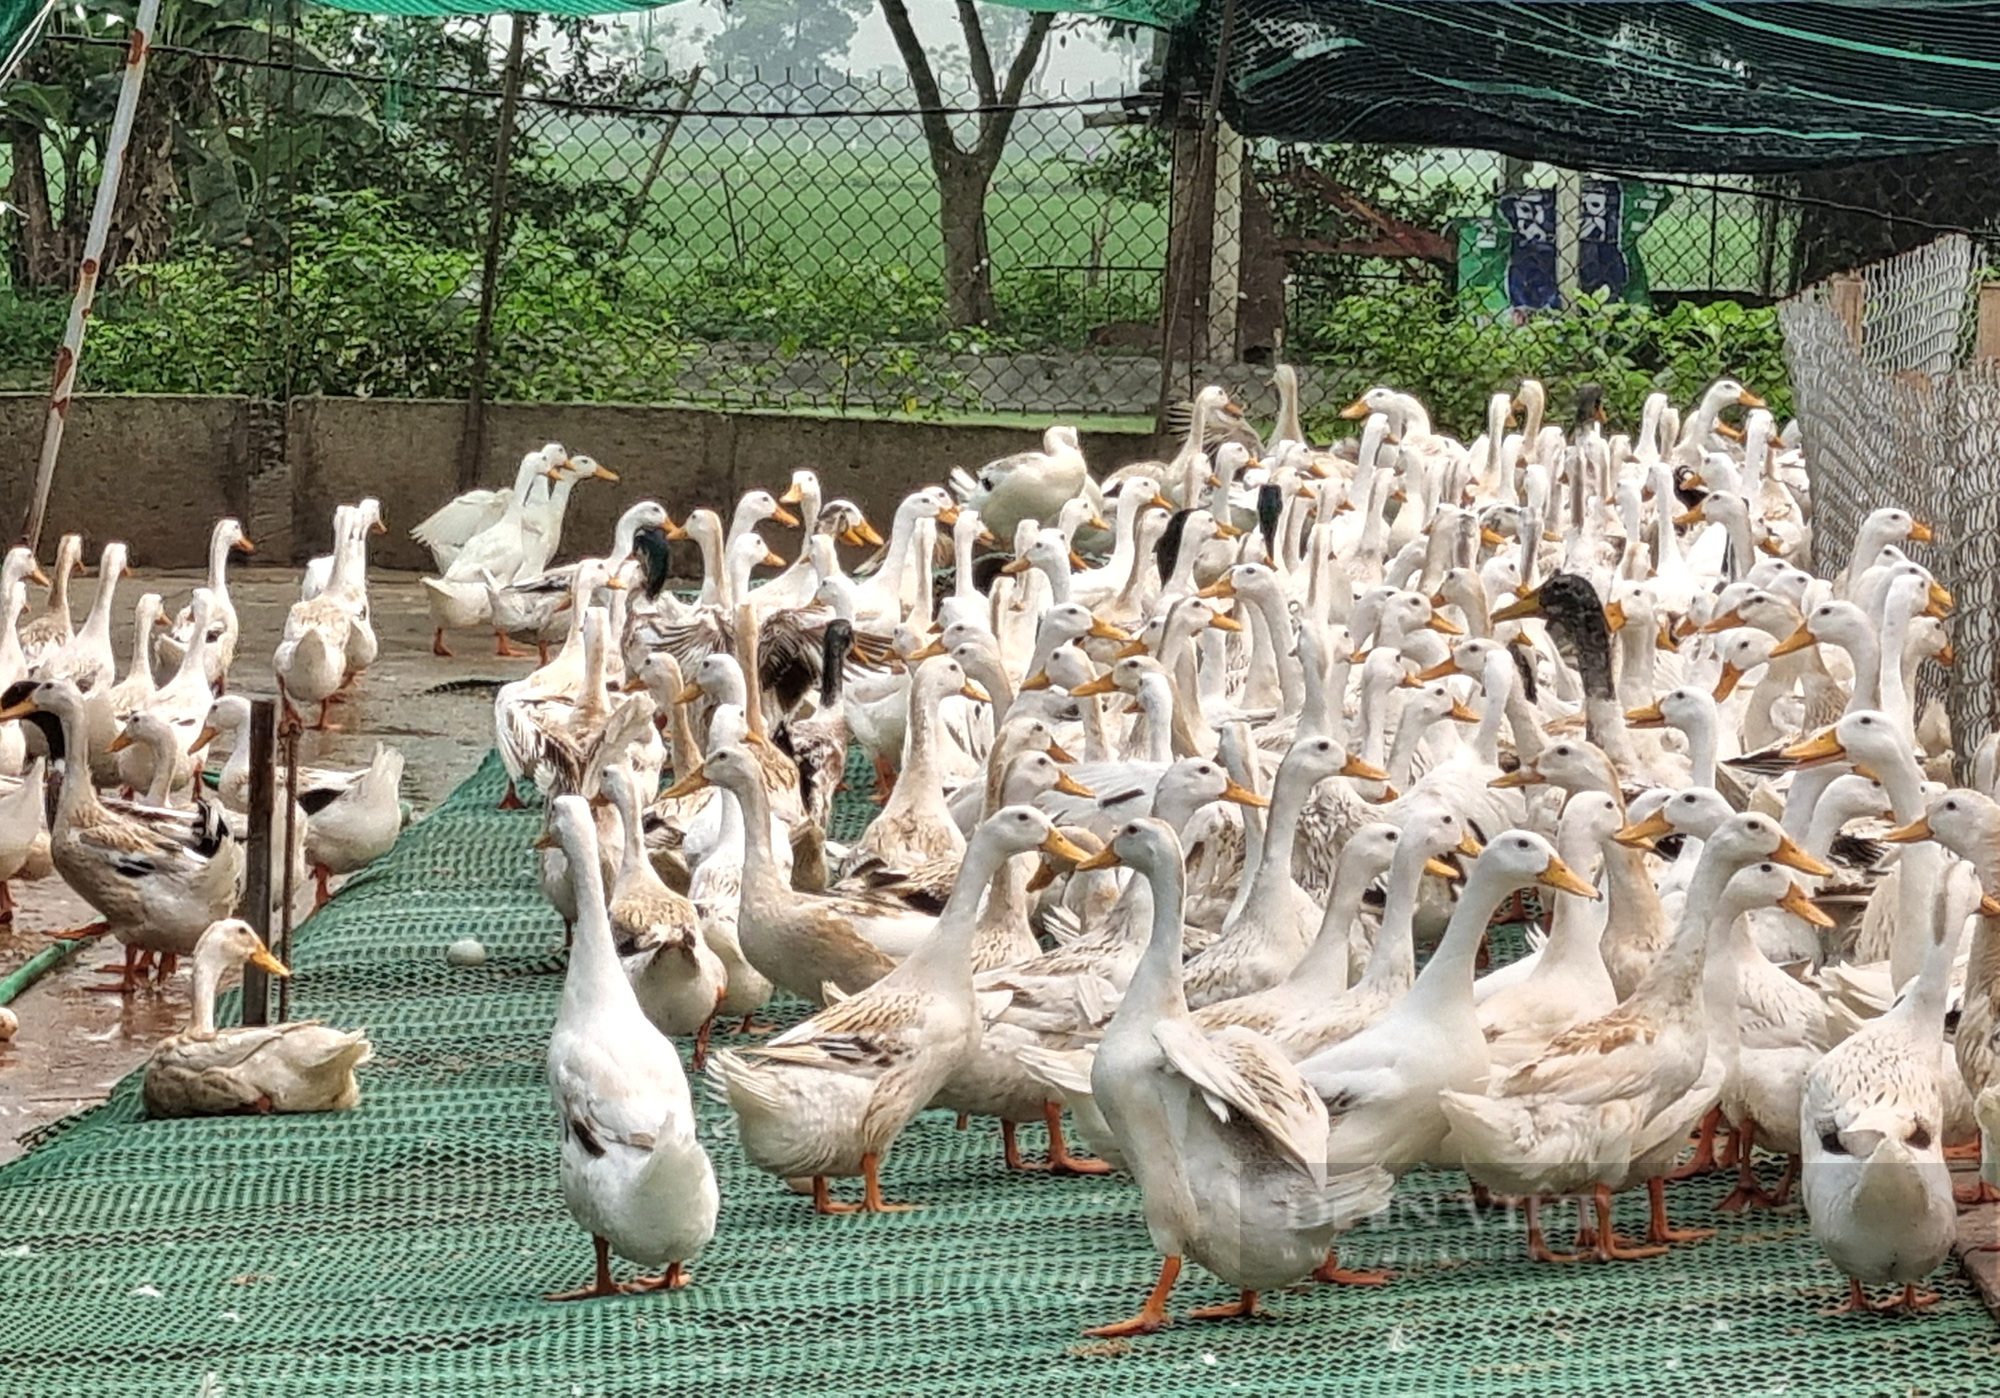 9X Ninh Bình nuôi 12.000 con vịt đẻ trứng lãi gần 200 triệu đồng/năm - Ảnh 3.